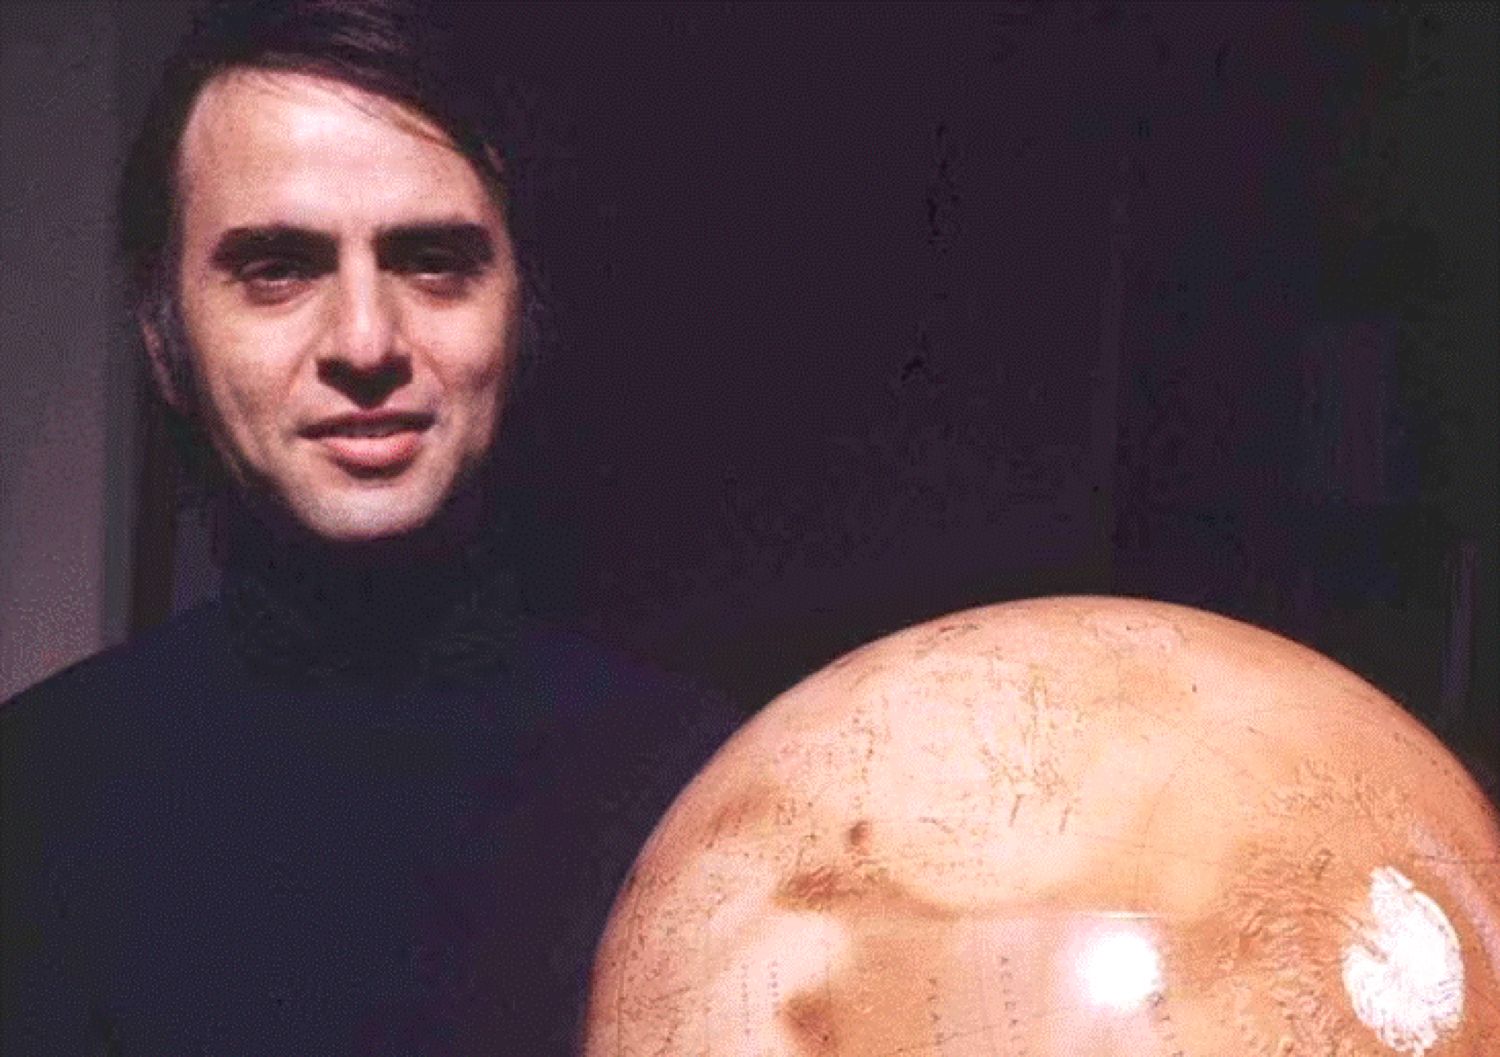 Predicția unui celebru astronom și astrofizician făcută în anul 1995 se adeverește. E incredibil ce a putut să spună